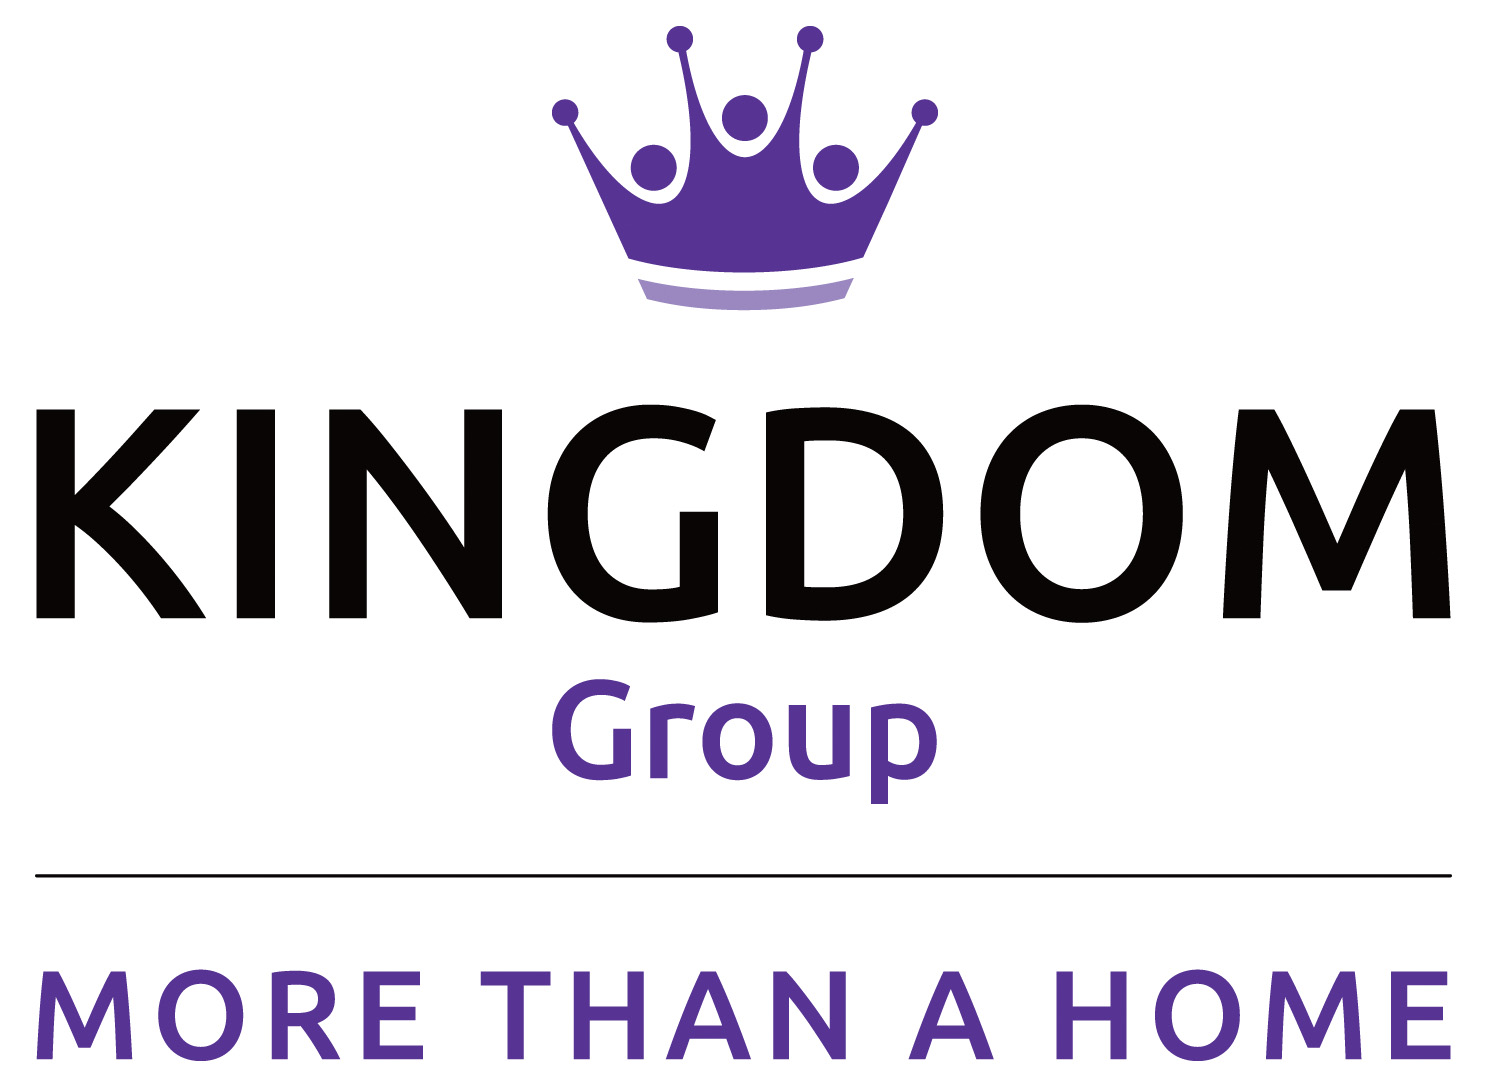 Kingdom Group